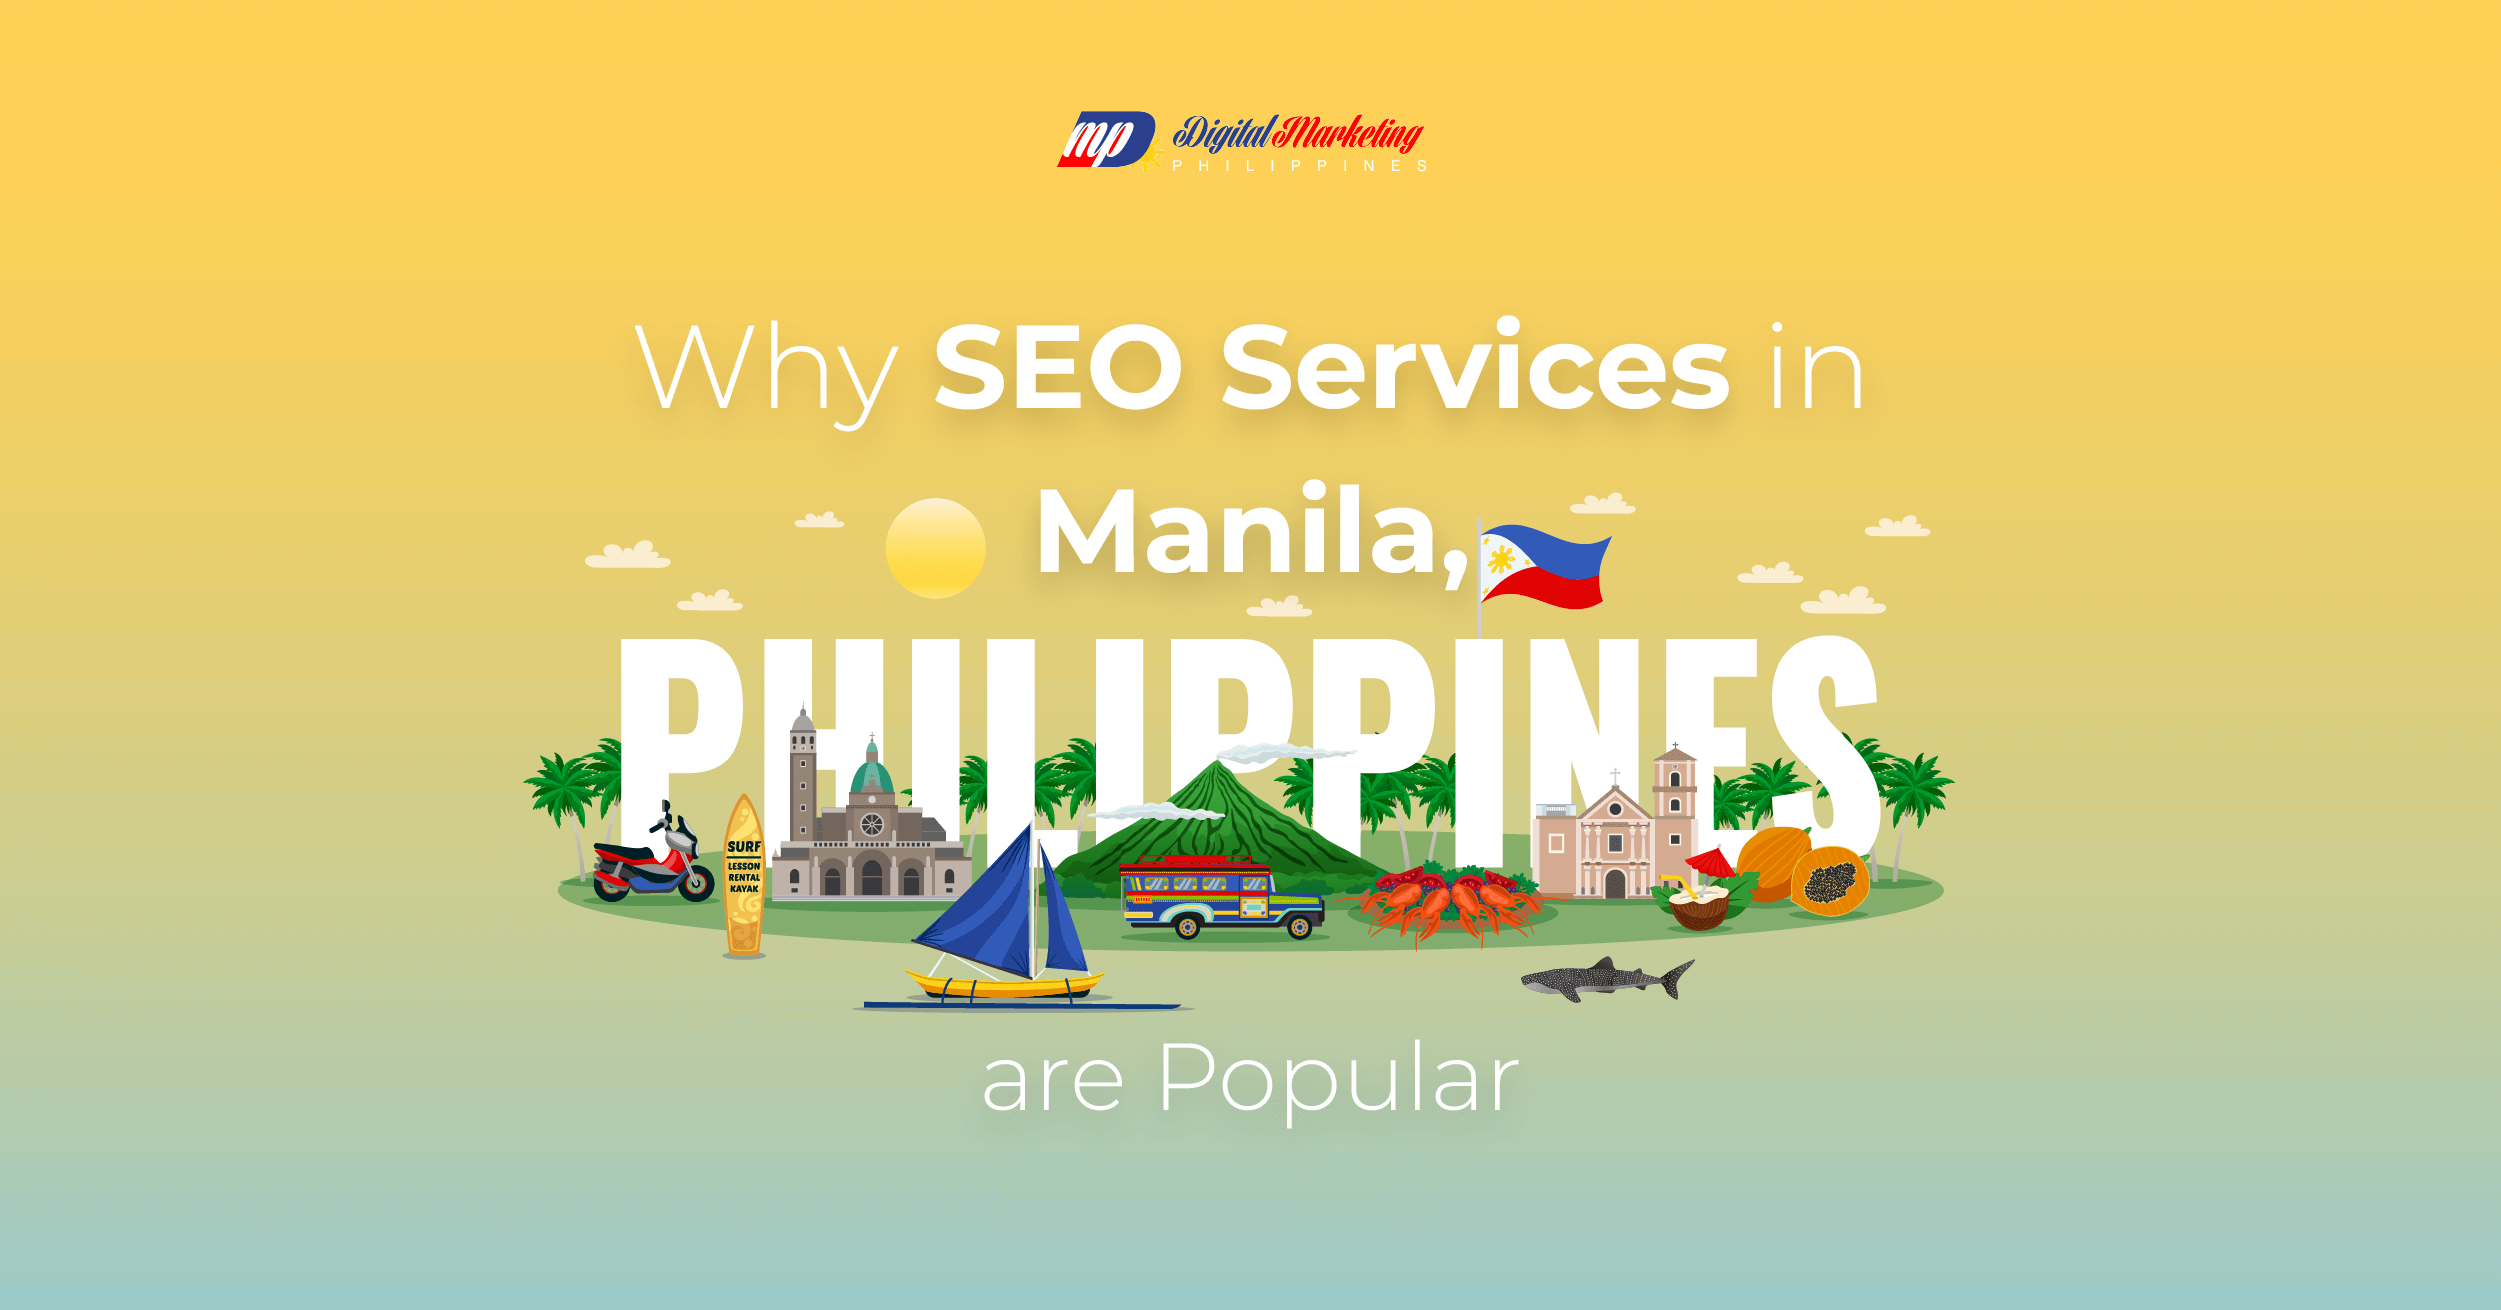 SEO Services in Manila